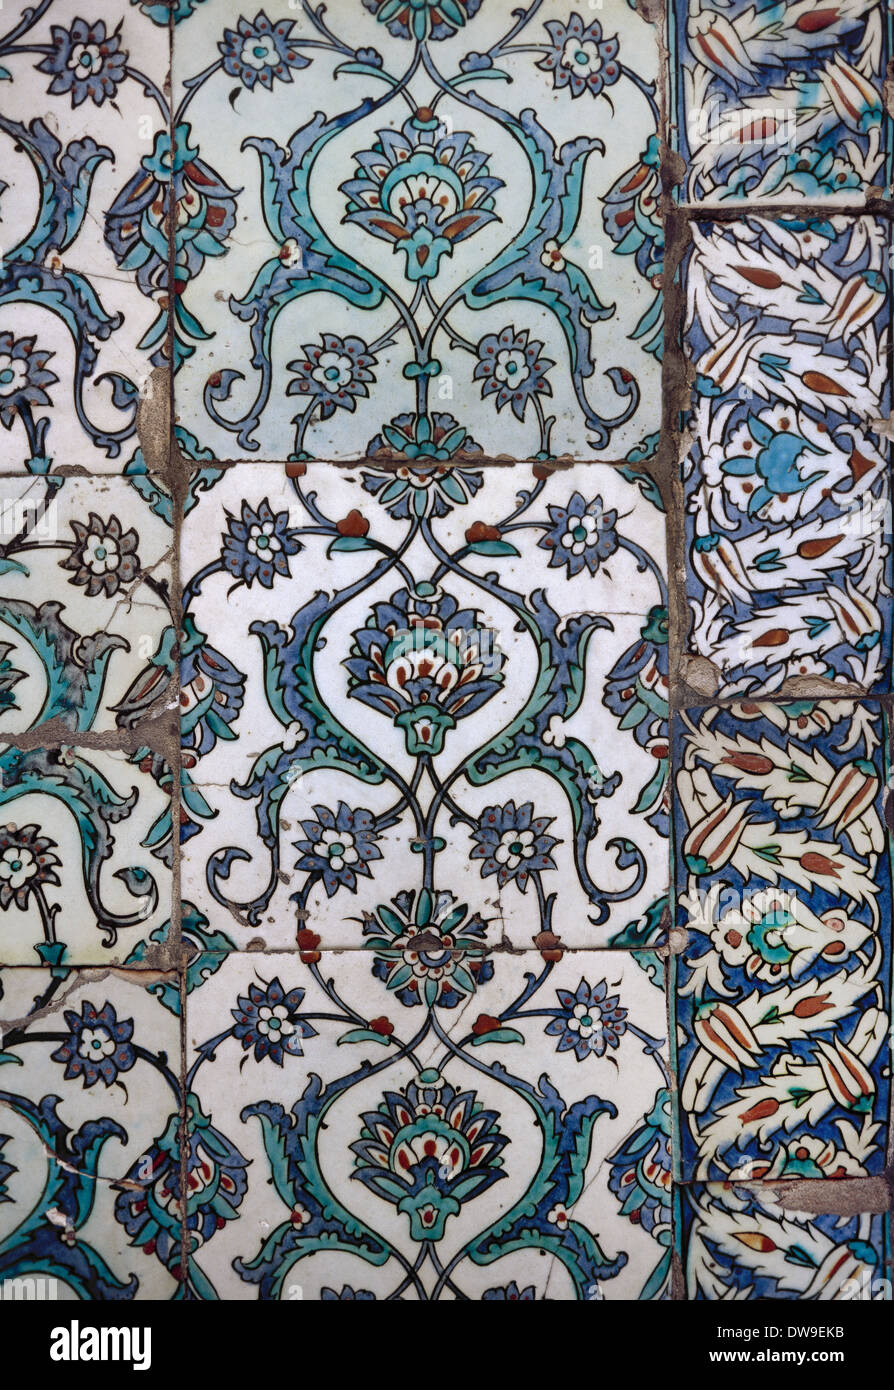 La Turquie. Istanbul. Le Palais de Topkapi. Détail de poterie émaillée qui décore les murs, faite par les potiers d'Iznik. Banque D'Images